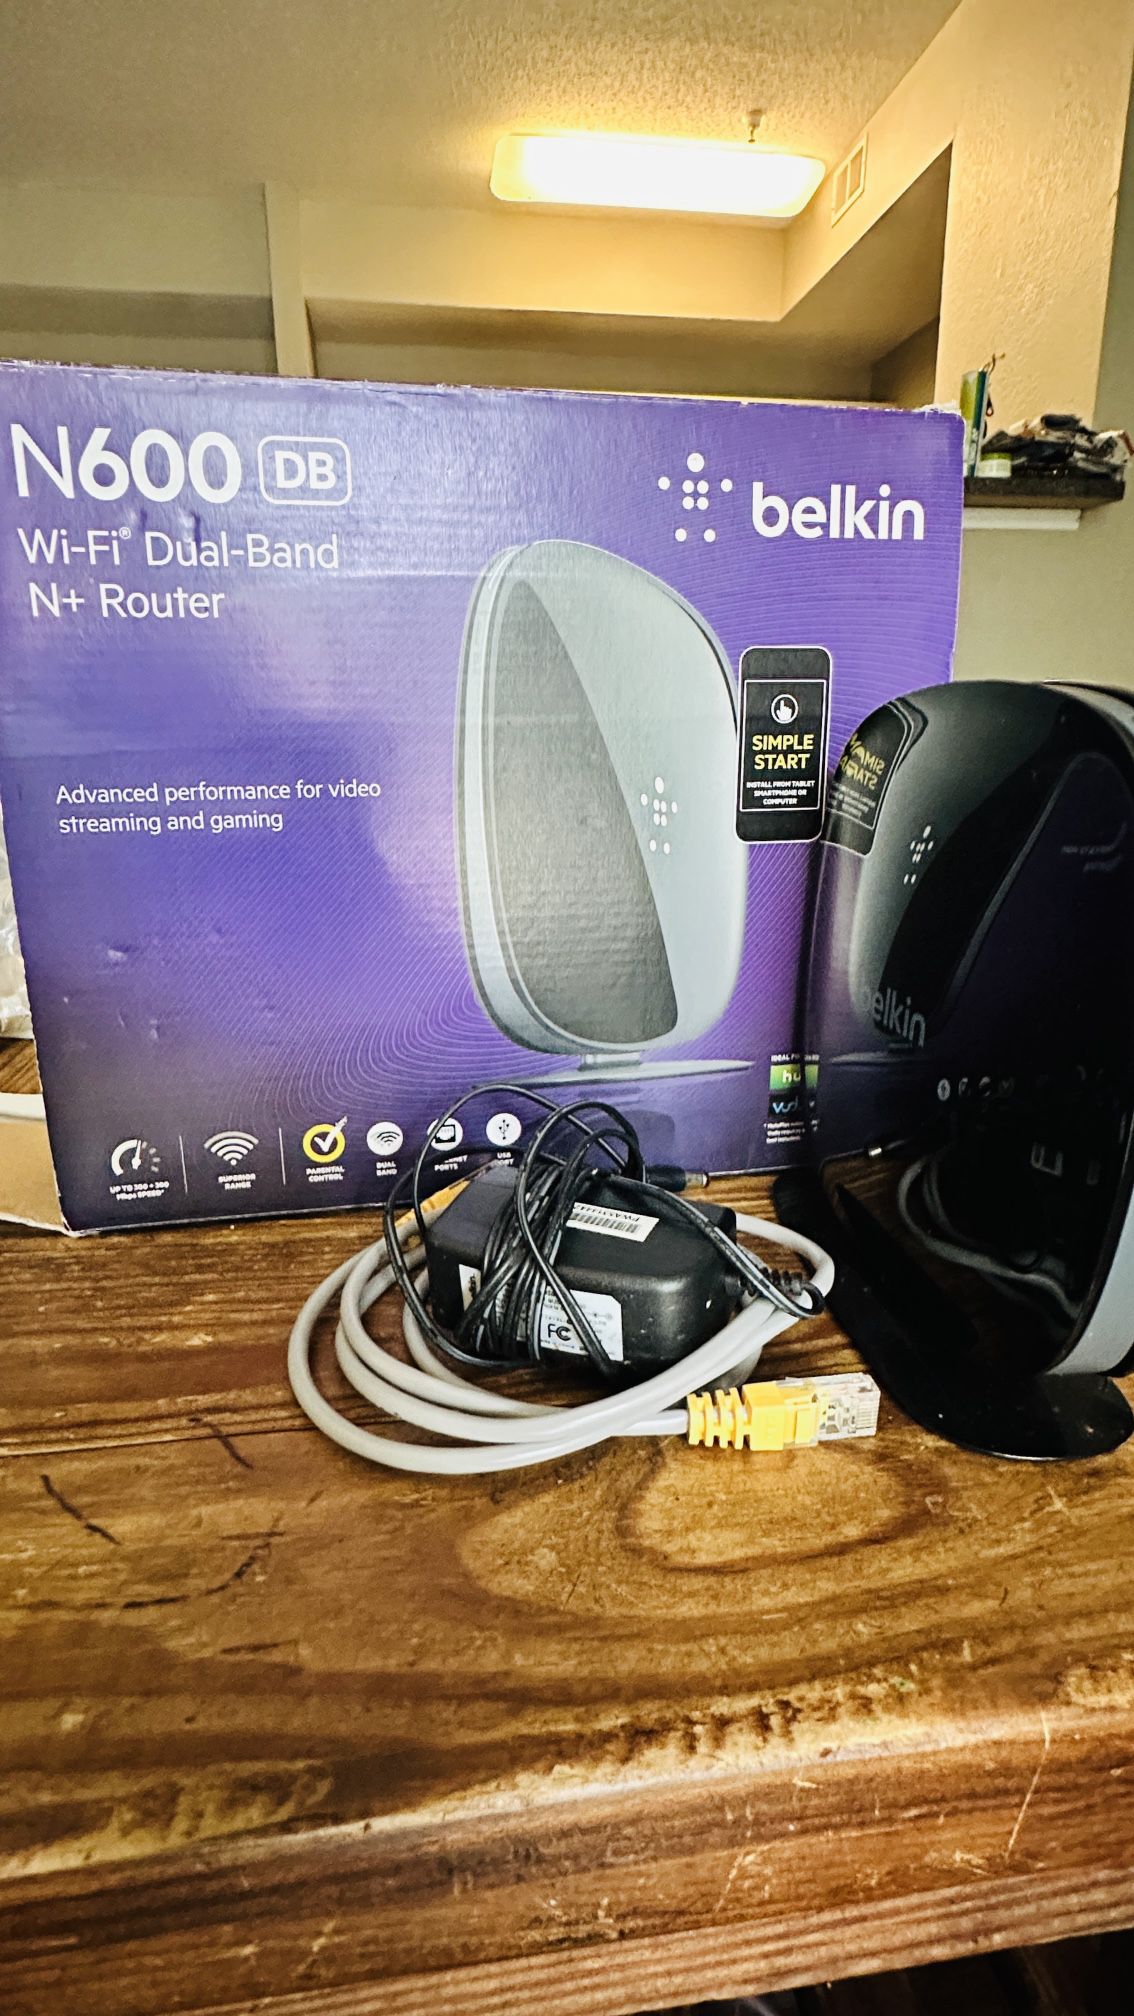 Router-Belkin N600(DB)